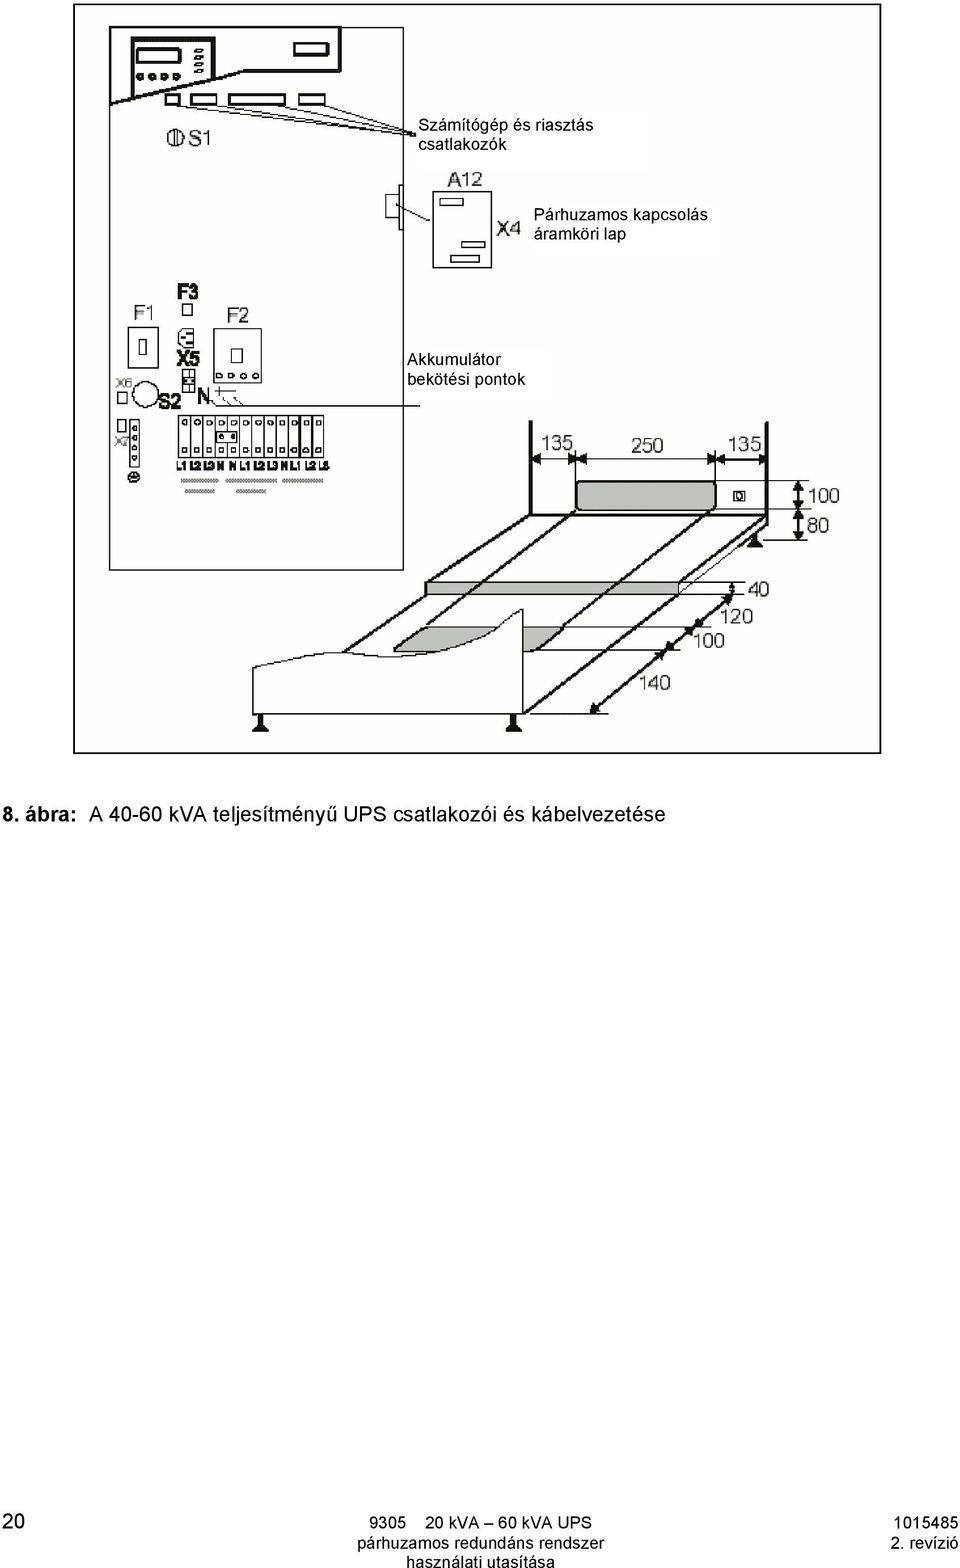 8. ábra: A 40-60 kva teljesítményű UPS csatlakozói és kábelvezetése